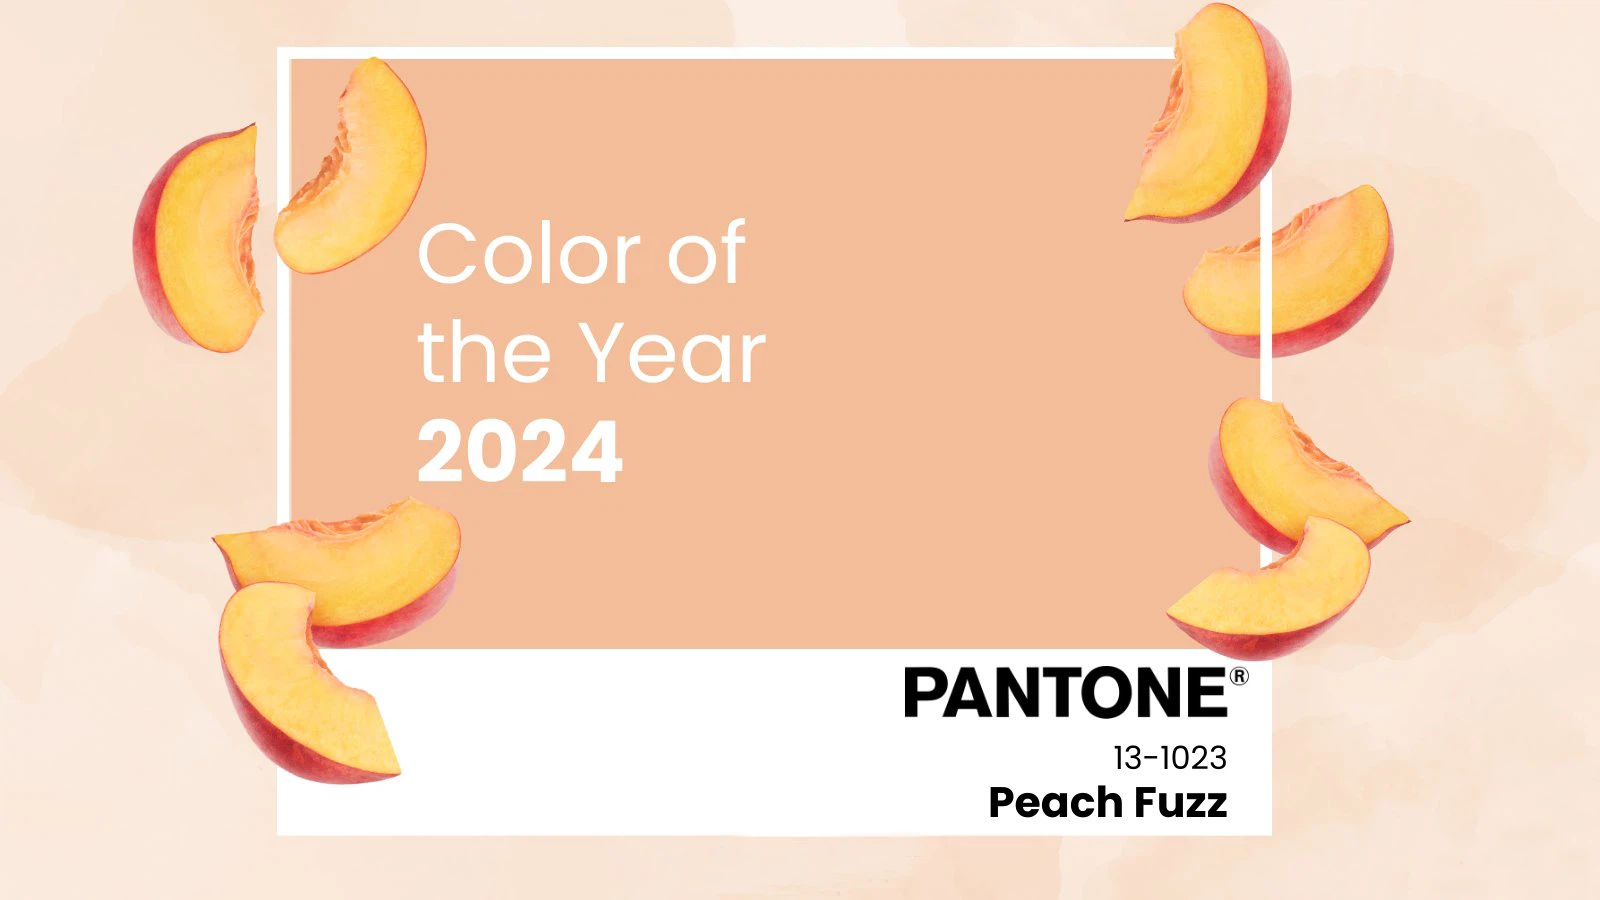 The color of the year 2024 and the color of the year 1403.1